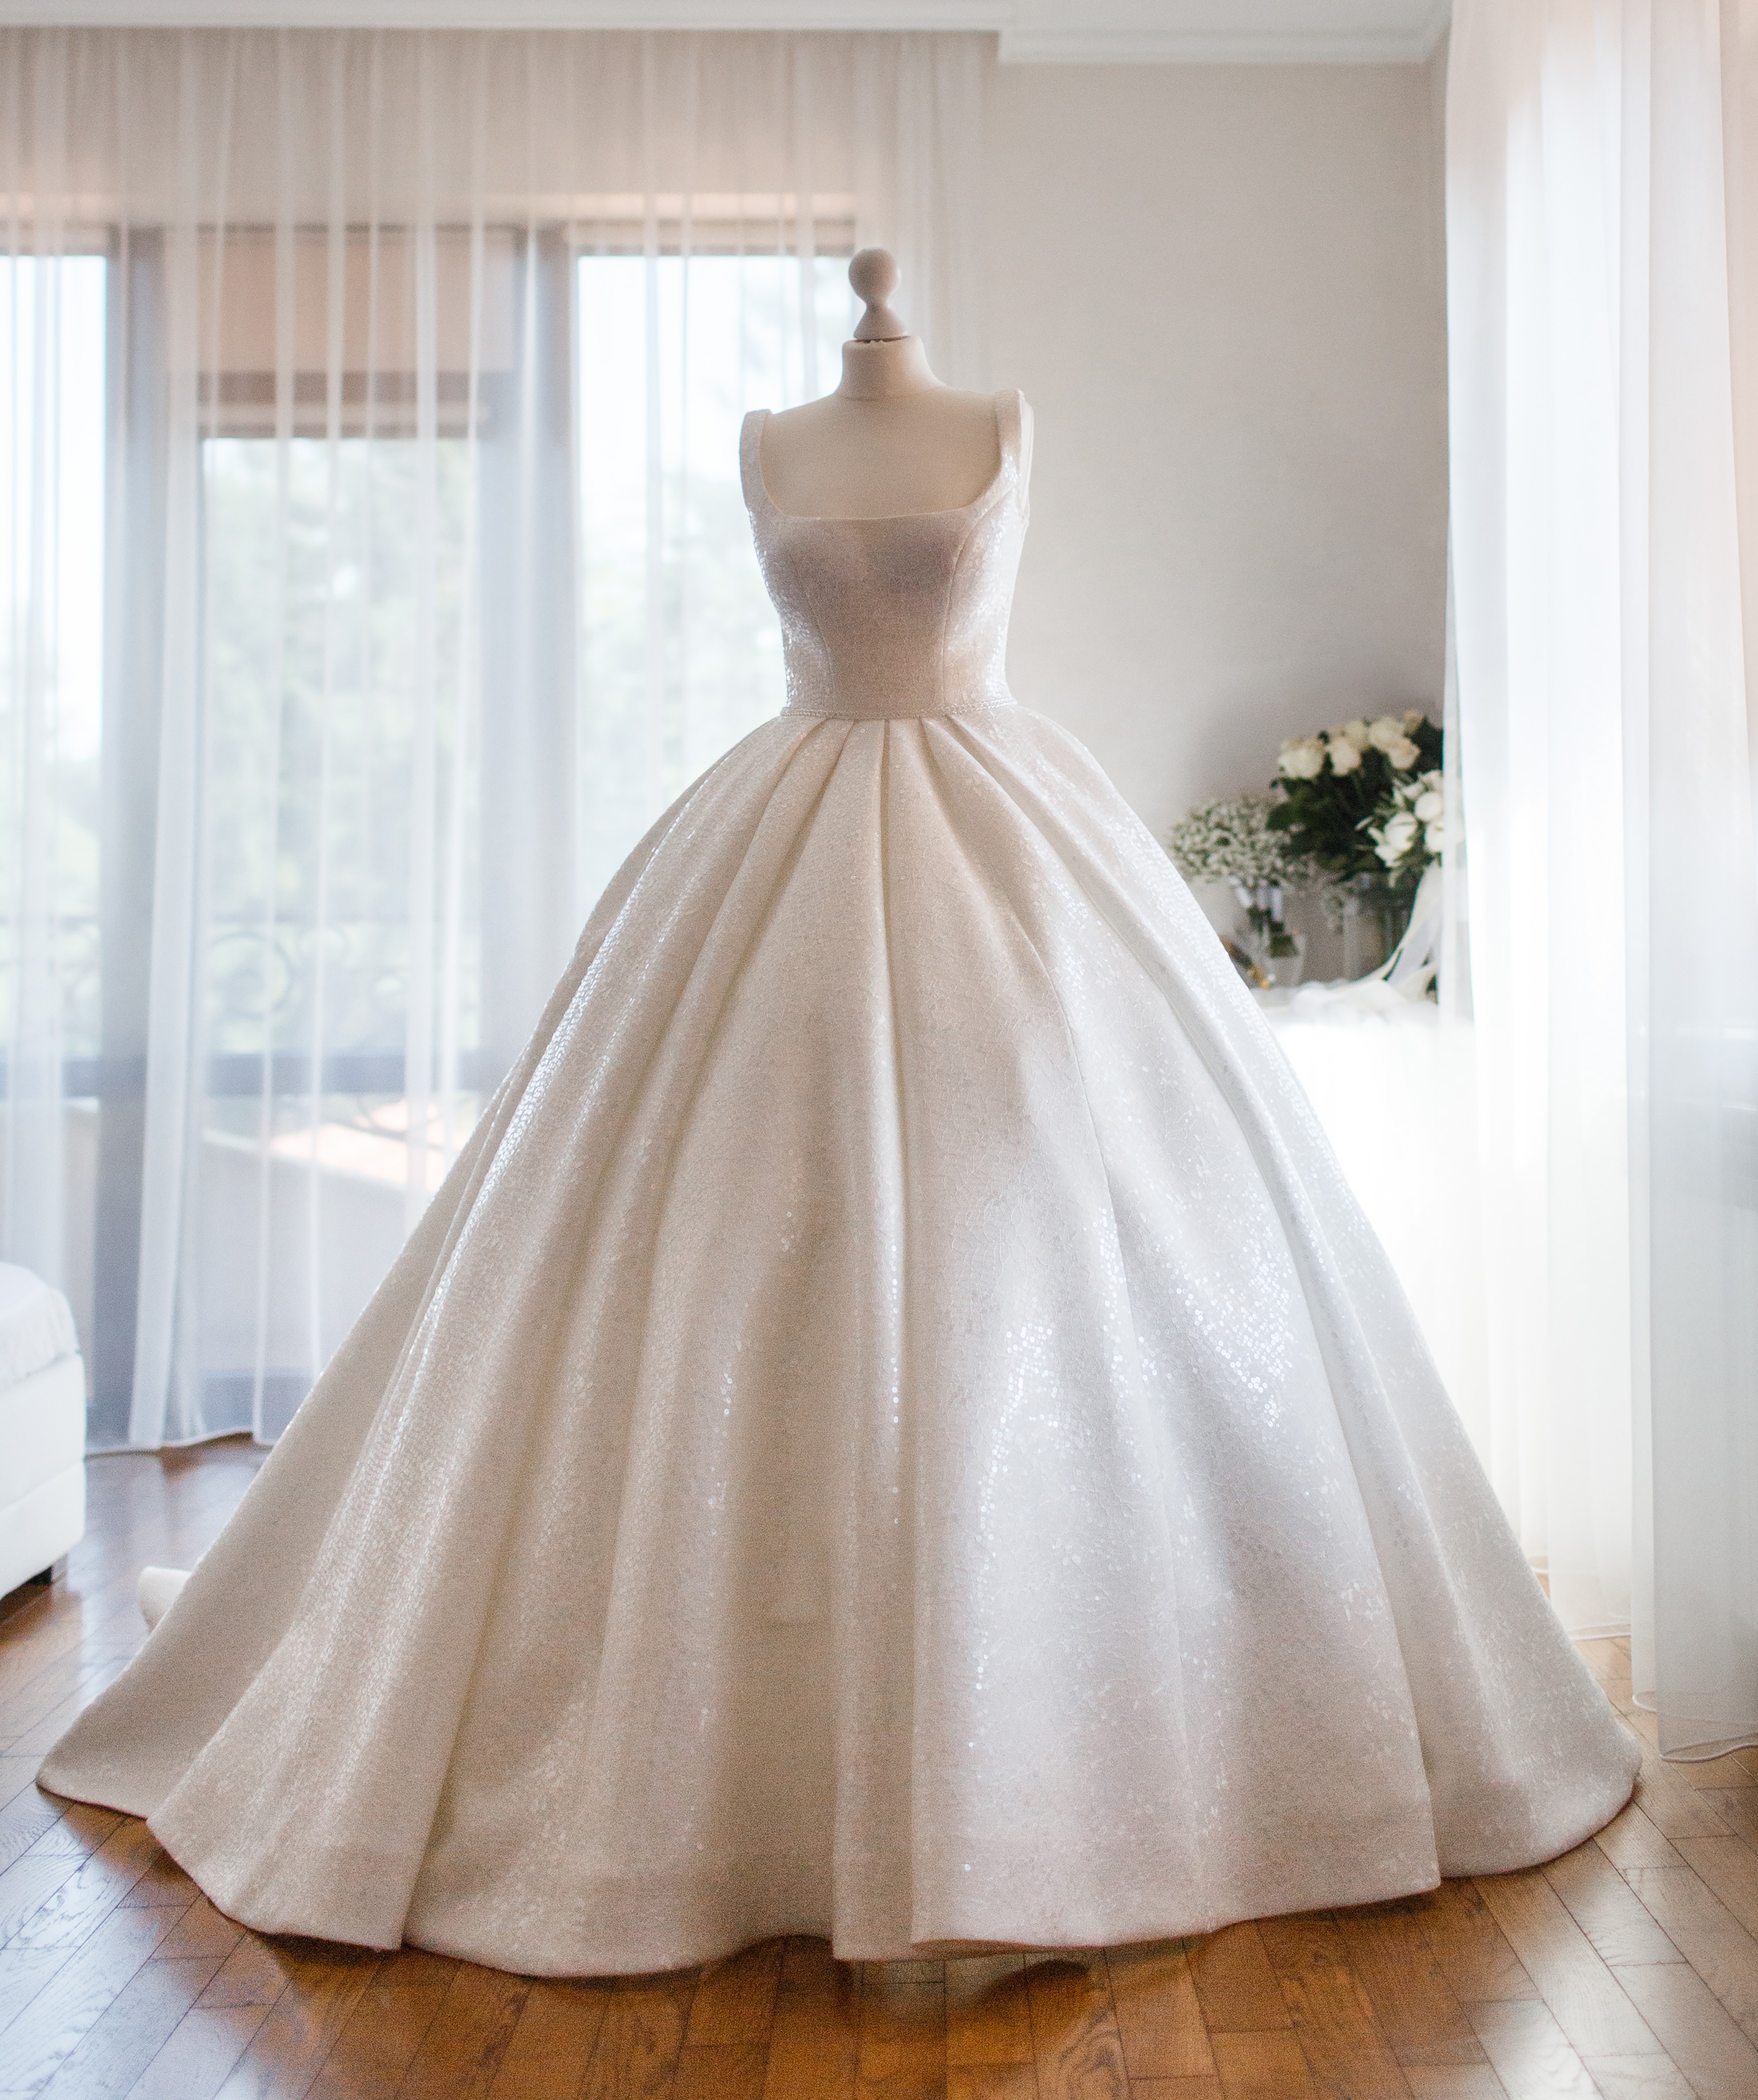 Ausgestelltes Hochzeitskleid | Quelle: Getty Images